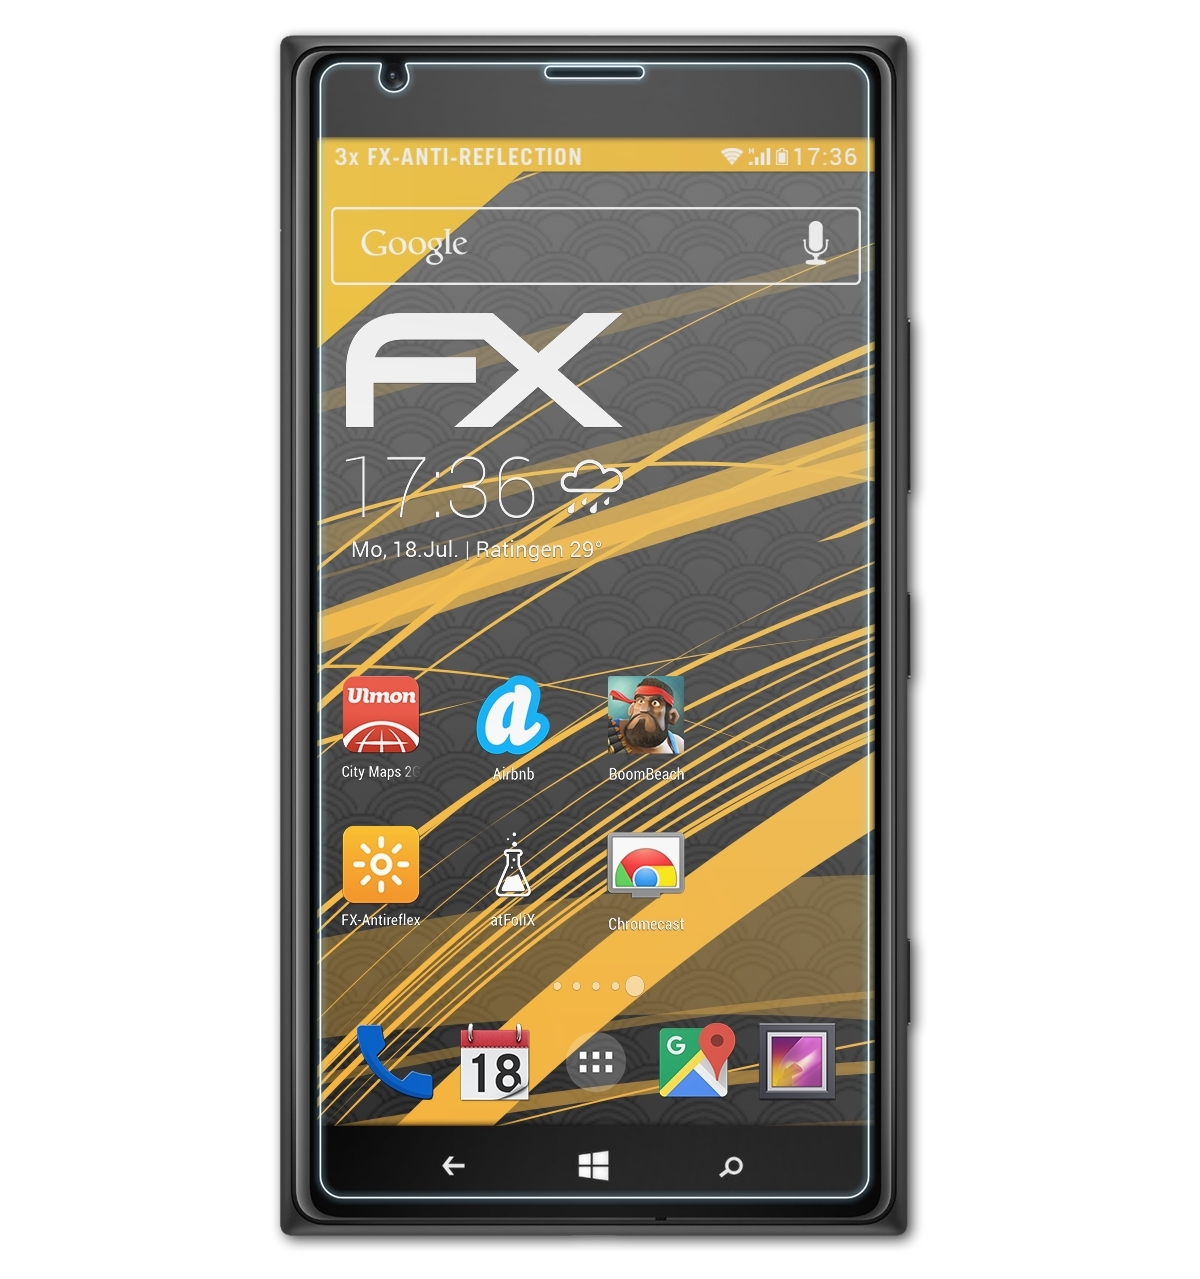 1520) Displayschutz(für Lumia 3x FX-Antireflex ATFOLIX Nokia